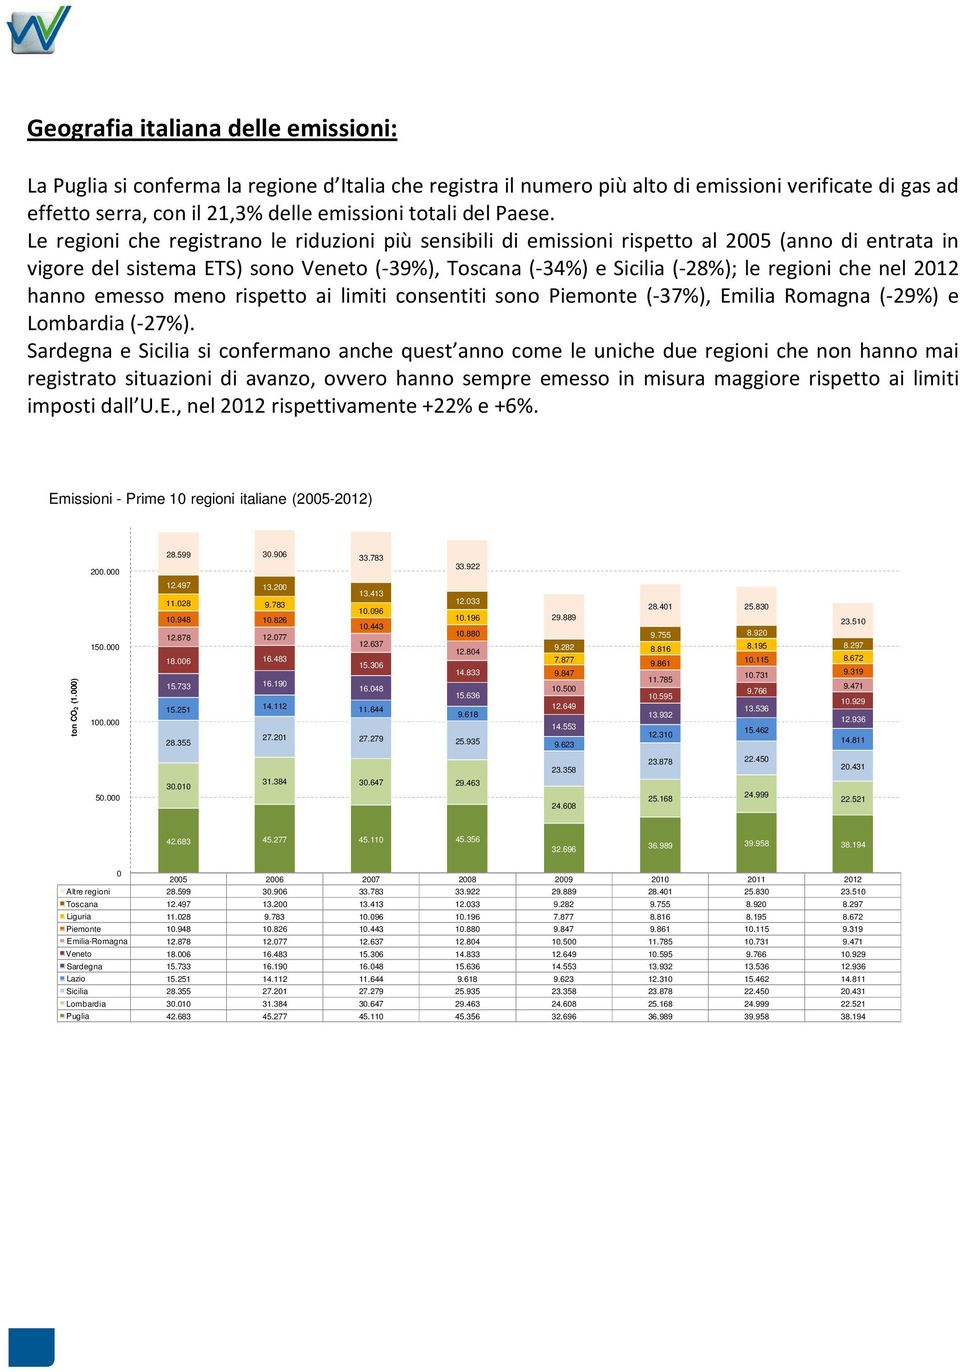 Le regioni che registrano le riduzioni più sensibili di emissioni rispetto al 2005 (anno di entrata in vigore del sistema ETS) sono Veneto (-39%), Toscana (-34%) e Sicilia (-28%); le regioni che nel